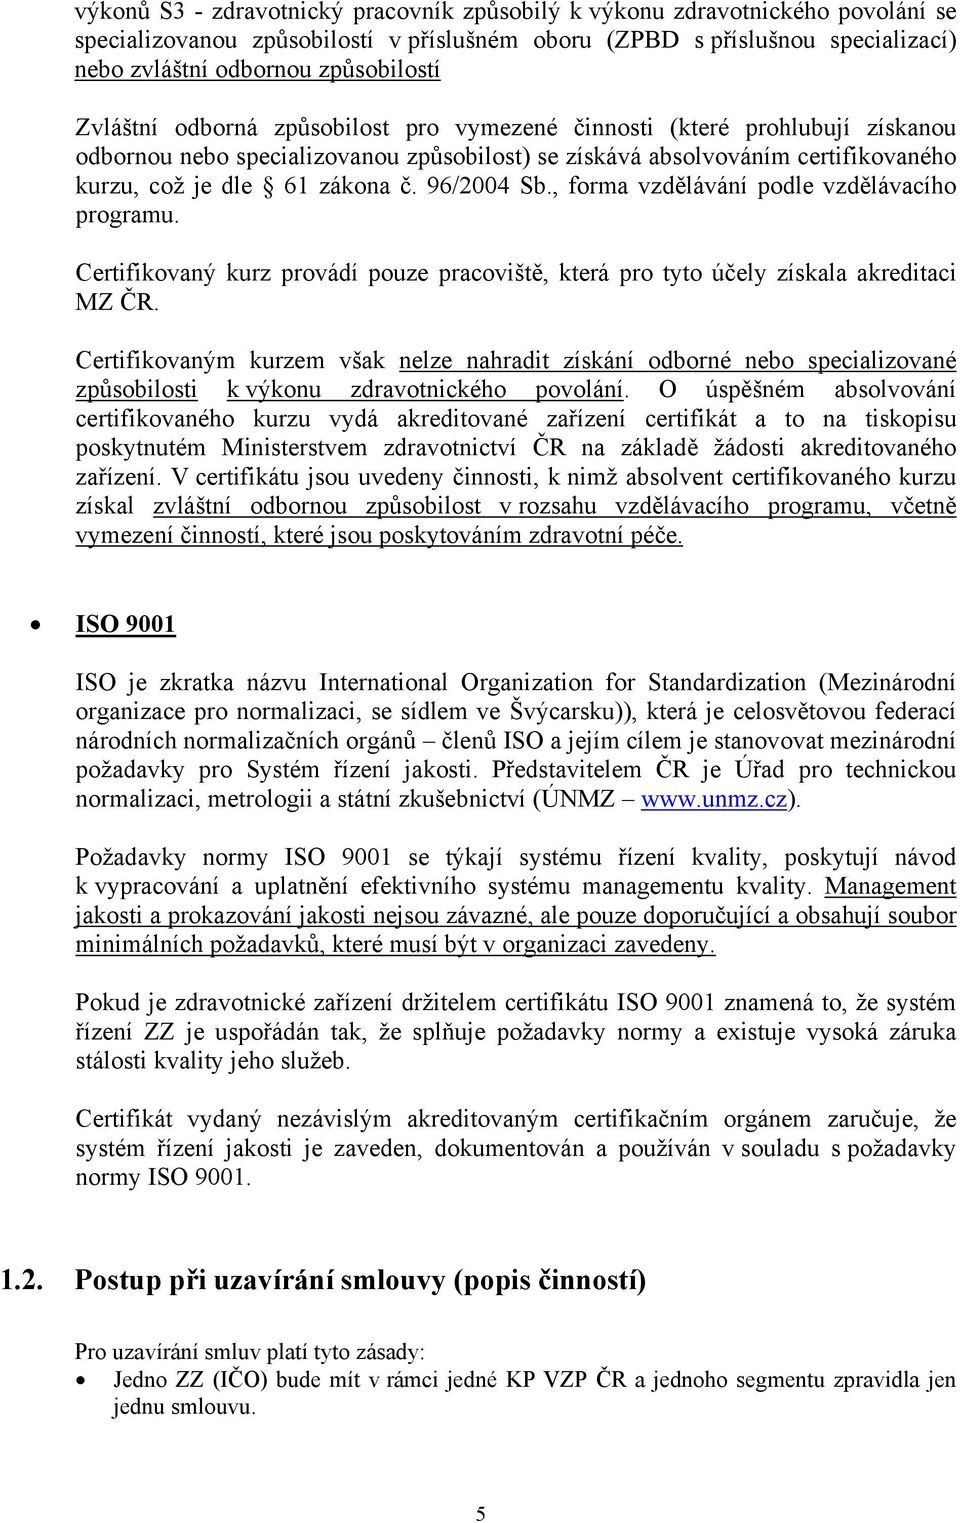 96/2004 Sb., forma vzdělávání podle vzdělávacího programu. Certifikovaný kurz provádí pouze pracoviště, která pro tyto účely získala akreditaci MZ ČR.